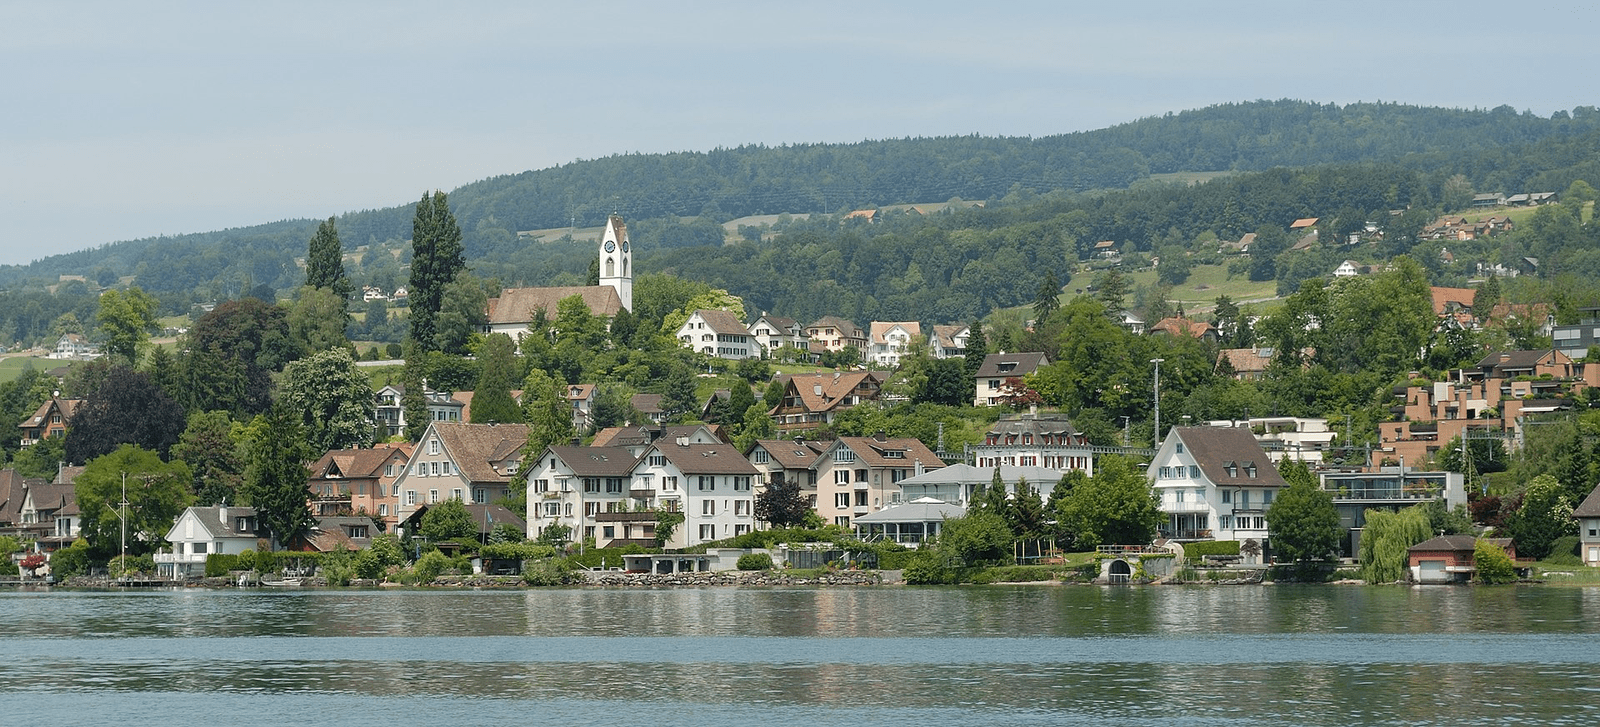 Weitere Einzelheiten Blick vom Zürichsee auf Uetikon am See mit der reformierten Kirche.